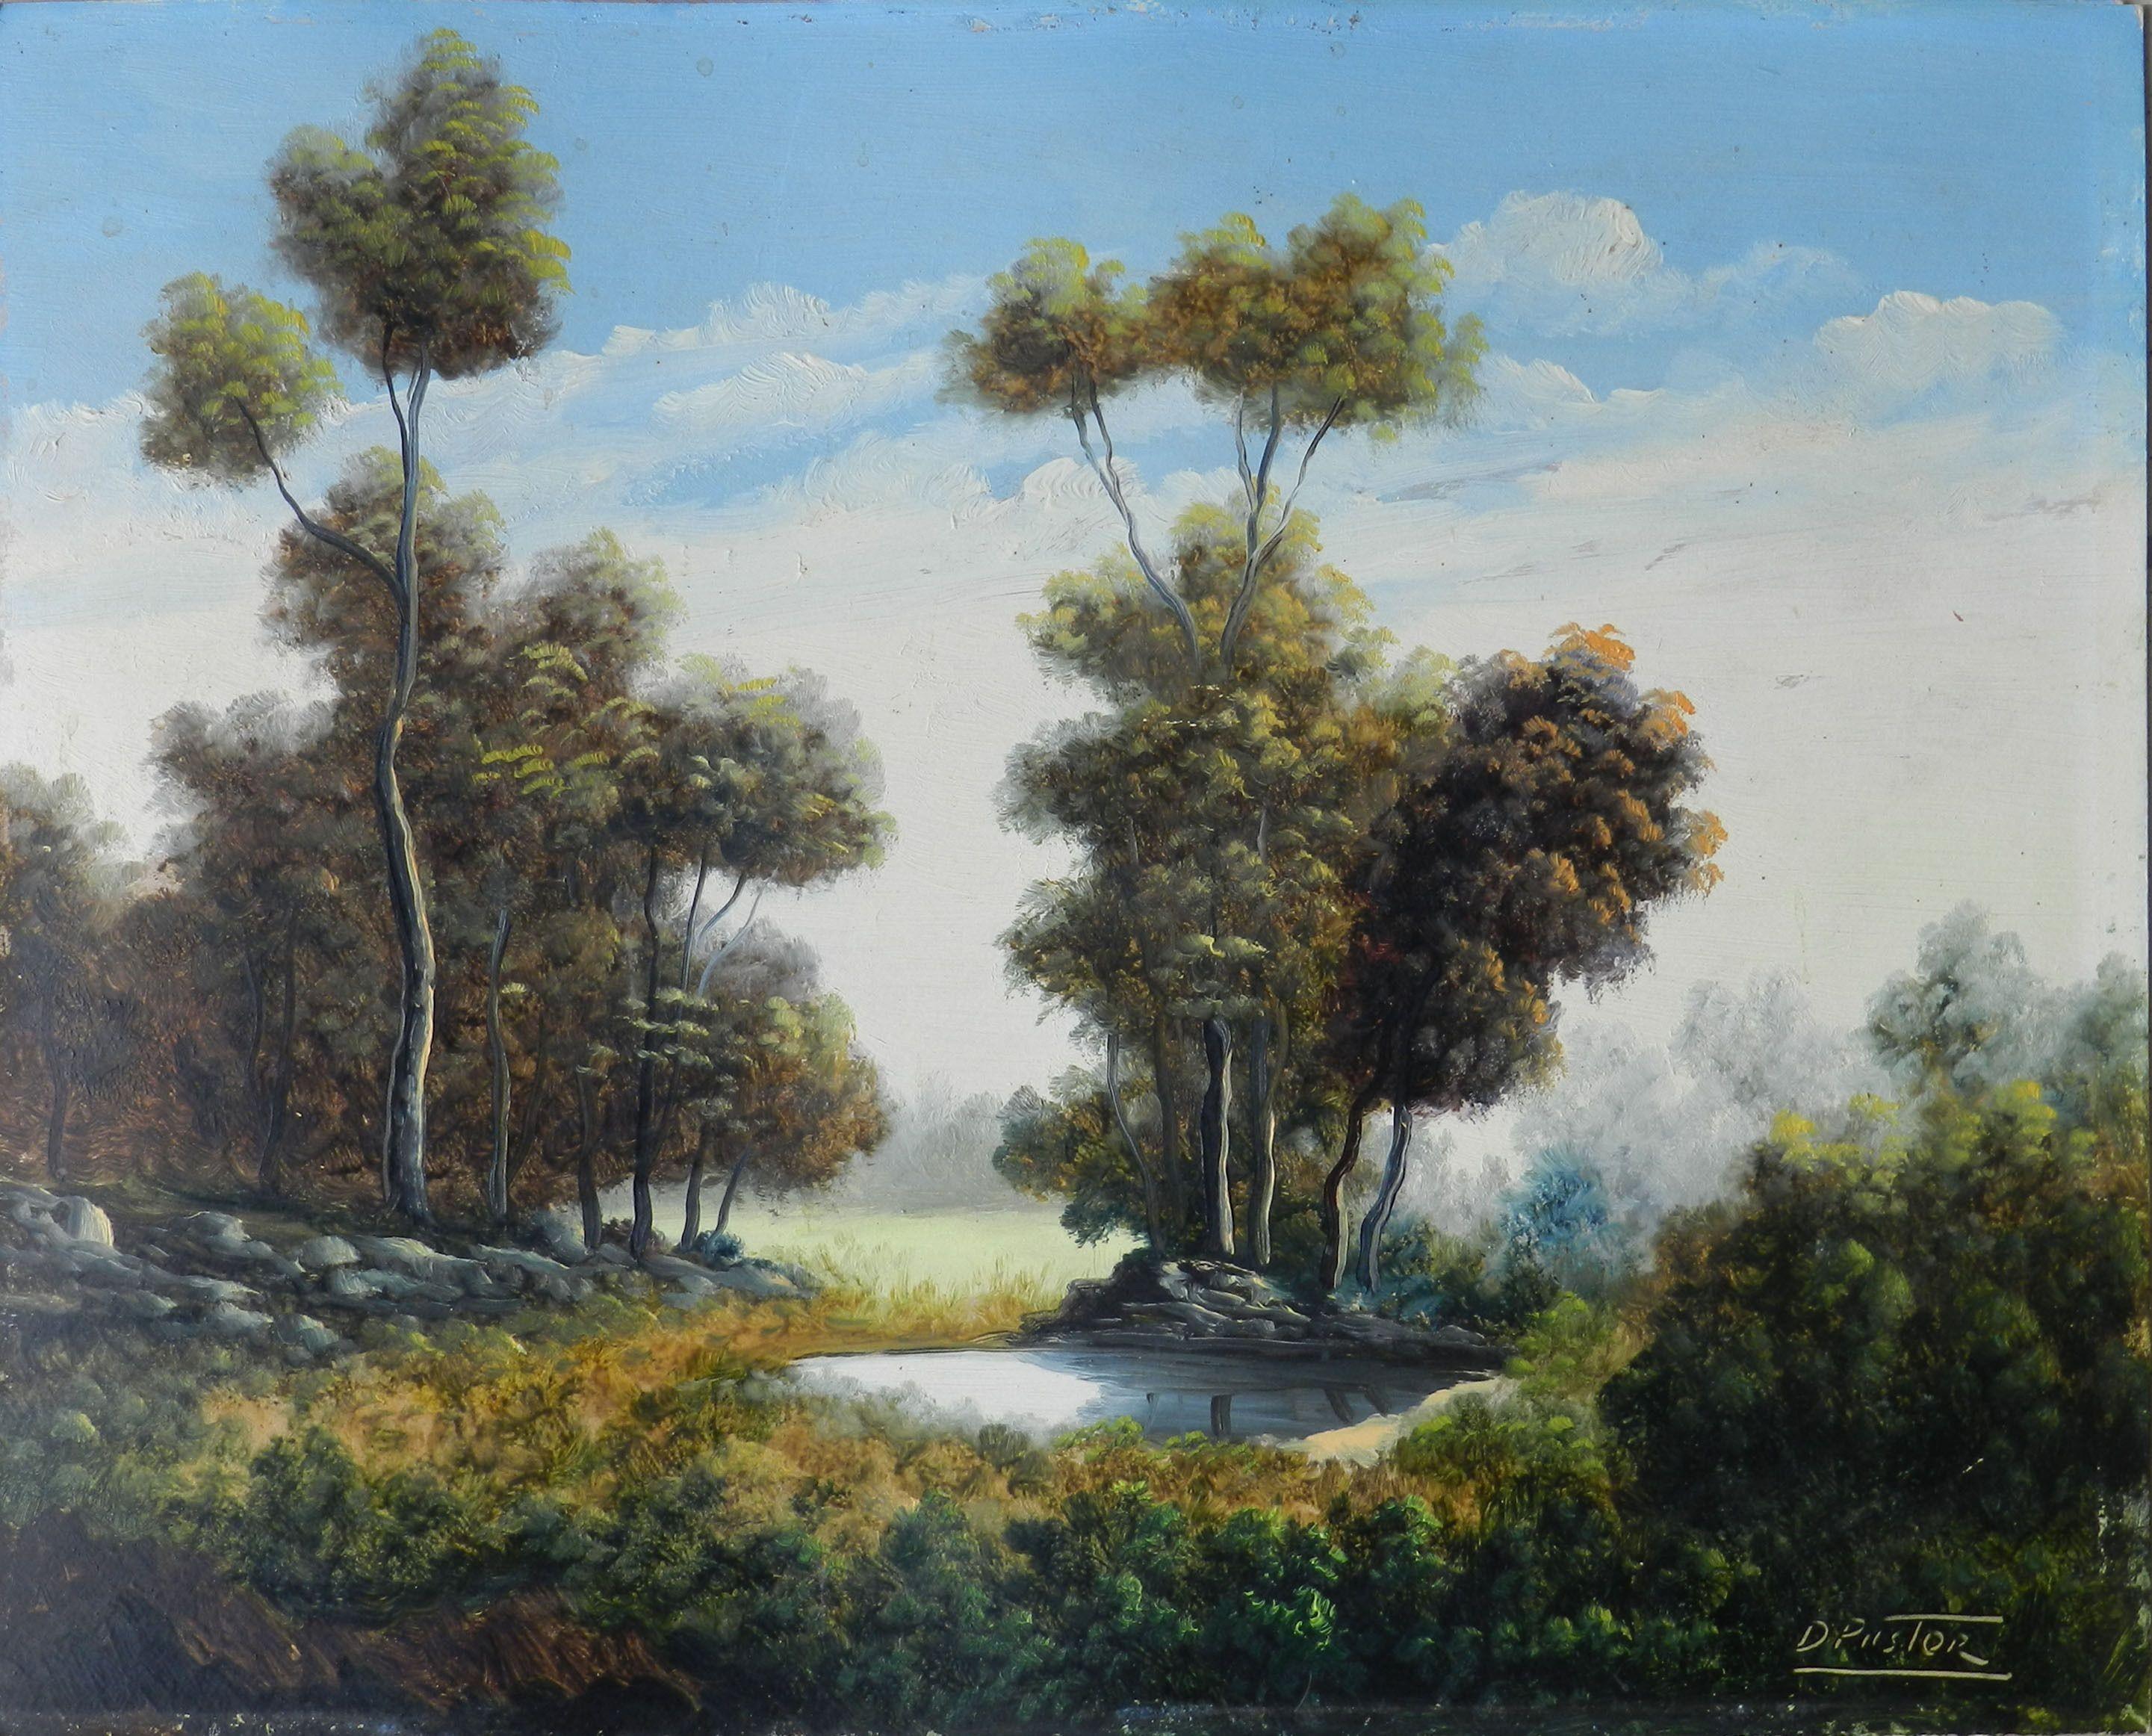 Paysage de lac par Daniel Pastor, peintre espagnol, vers 1930-40